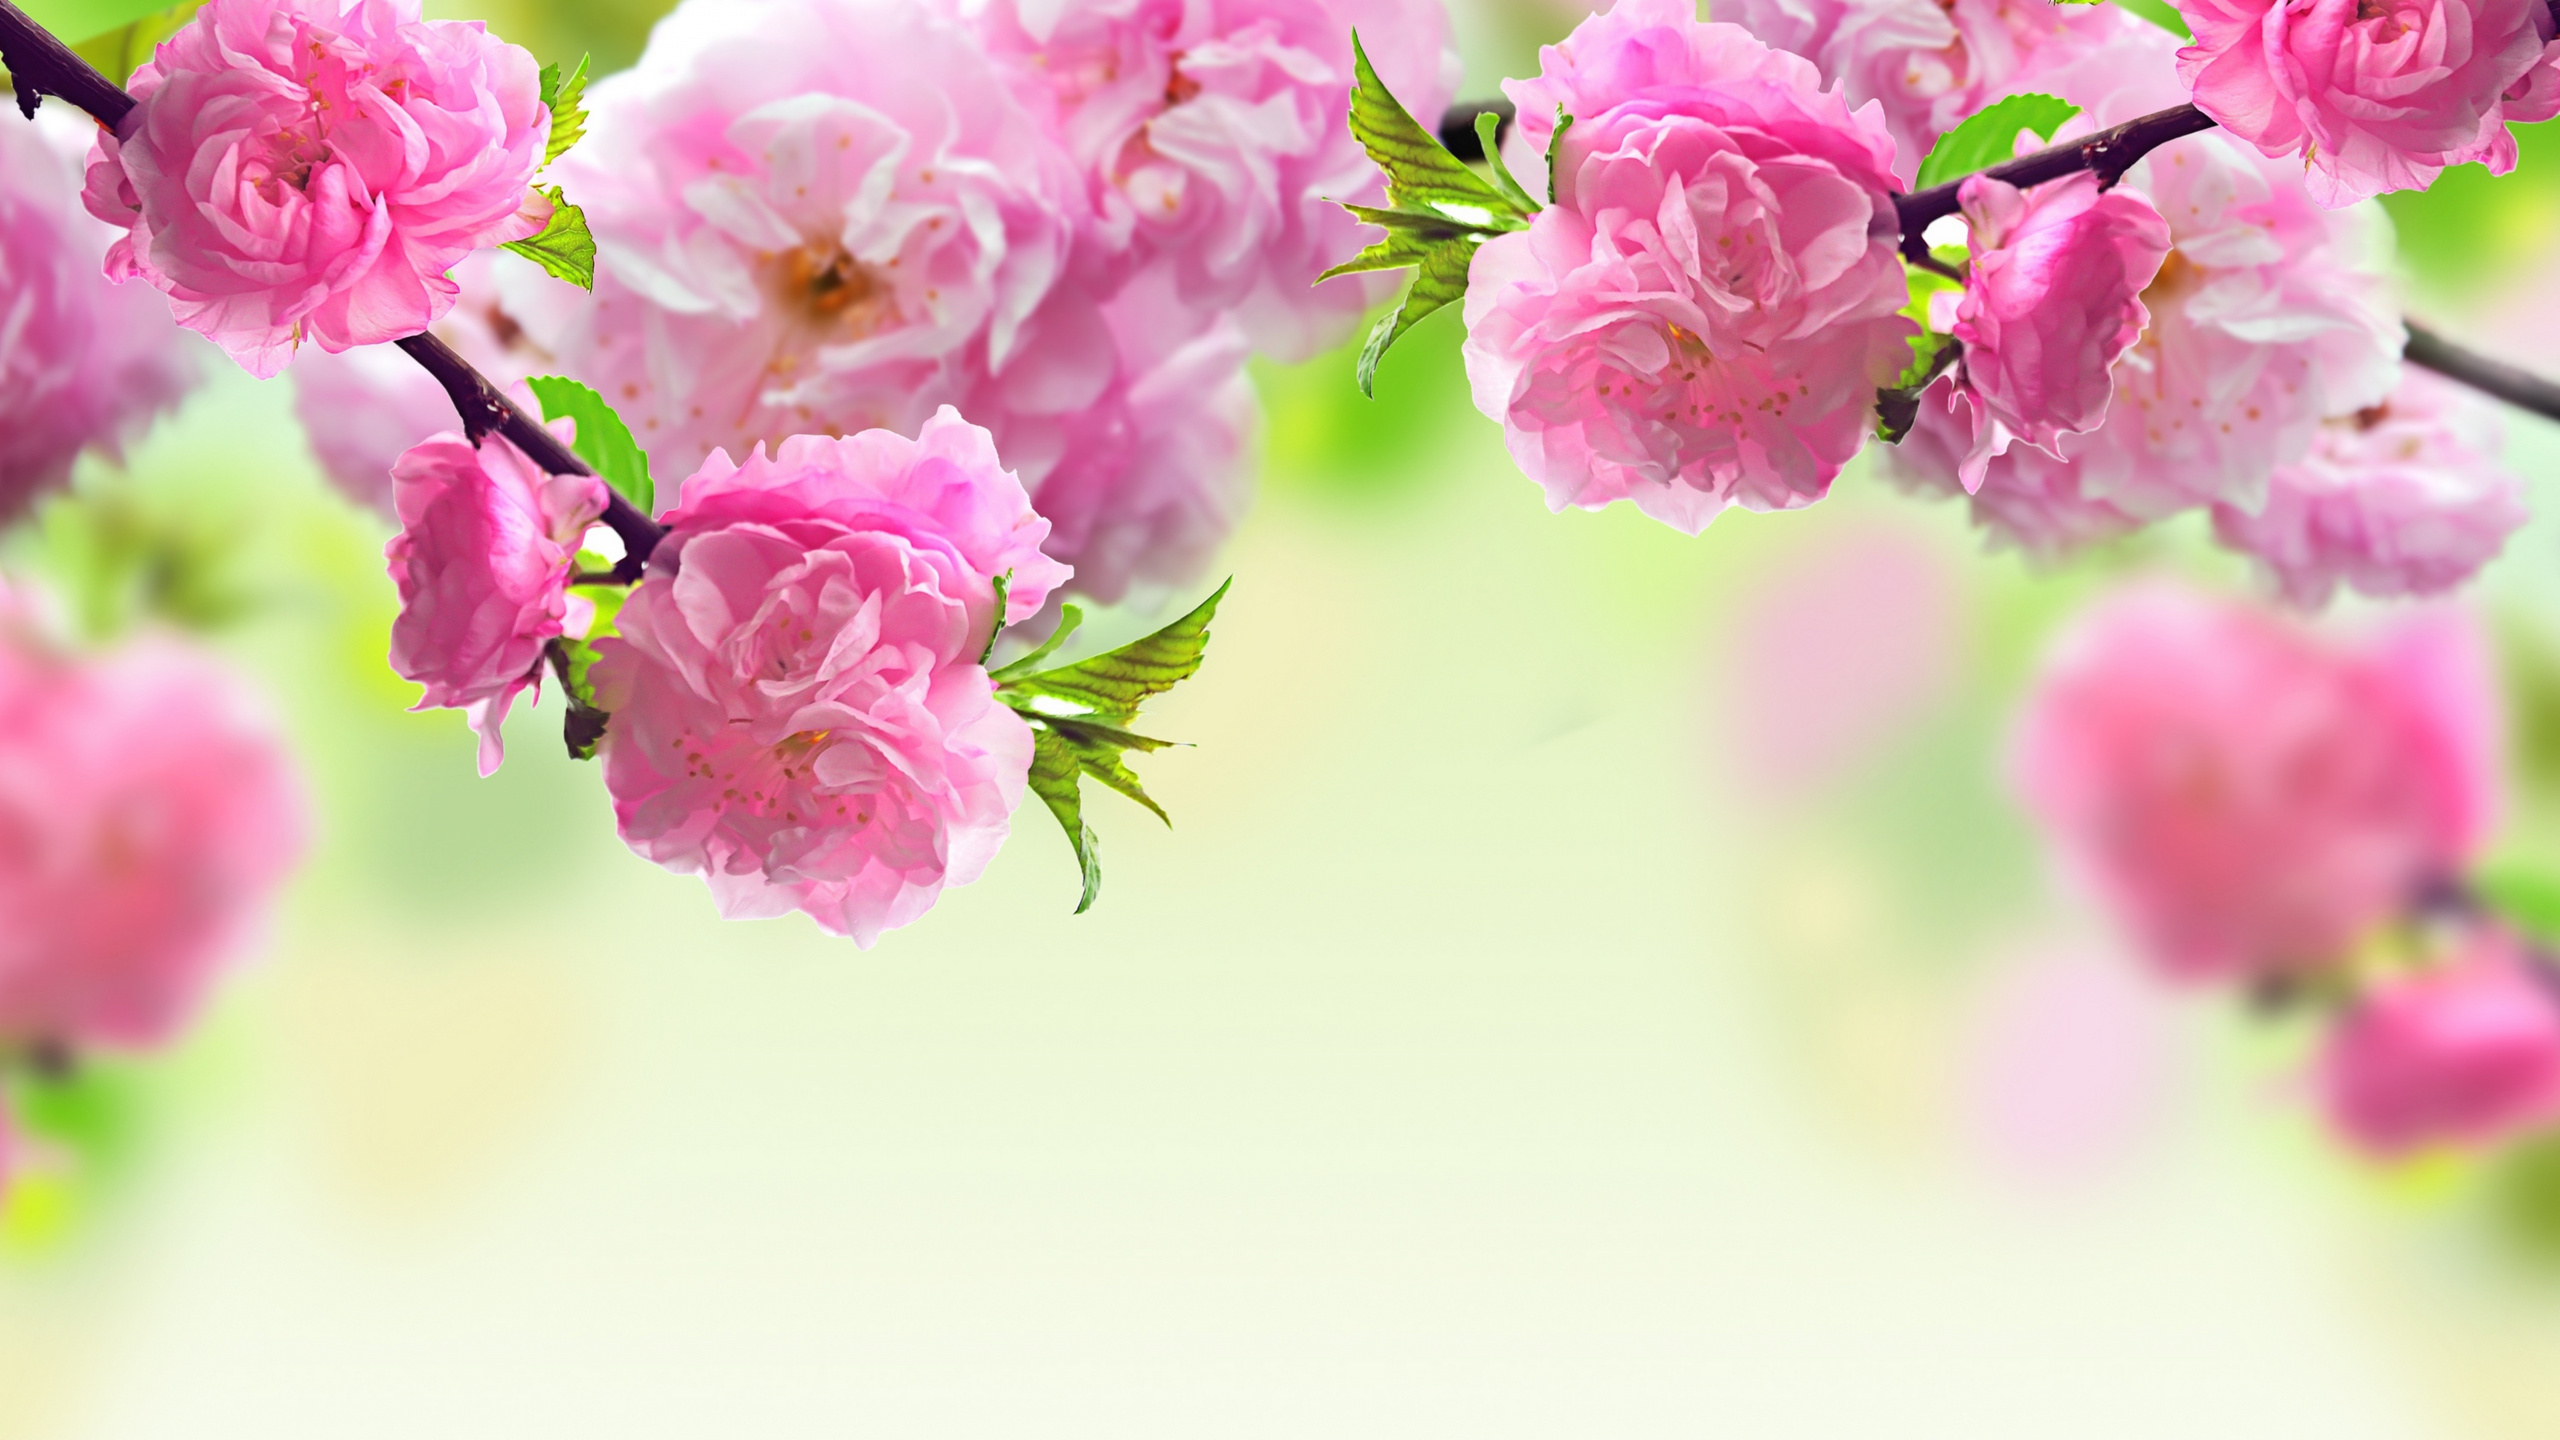 Primavera, Rosa, Sucursal, Pétalo, la Floración de la Planta. Wallpaper in 2560x1440 Resolution